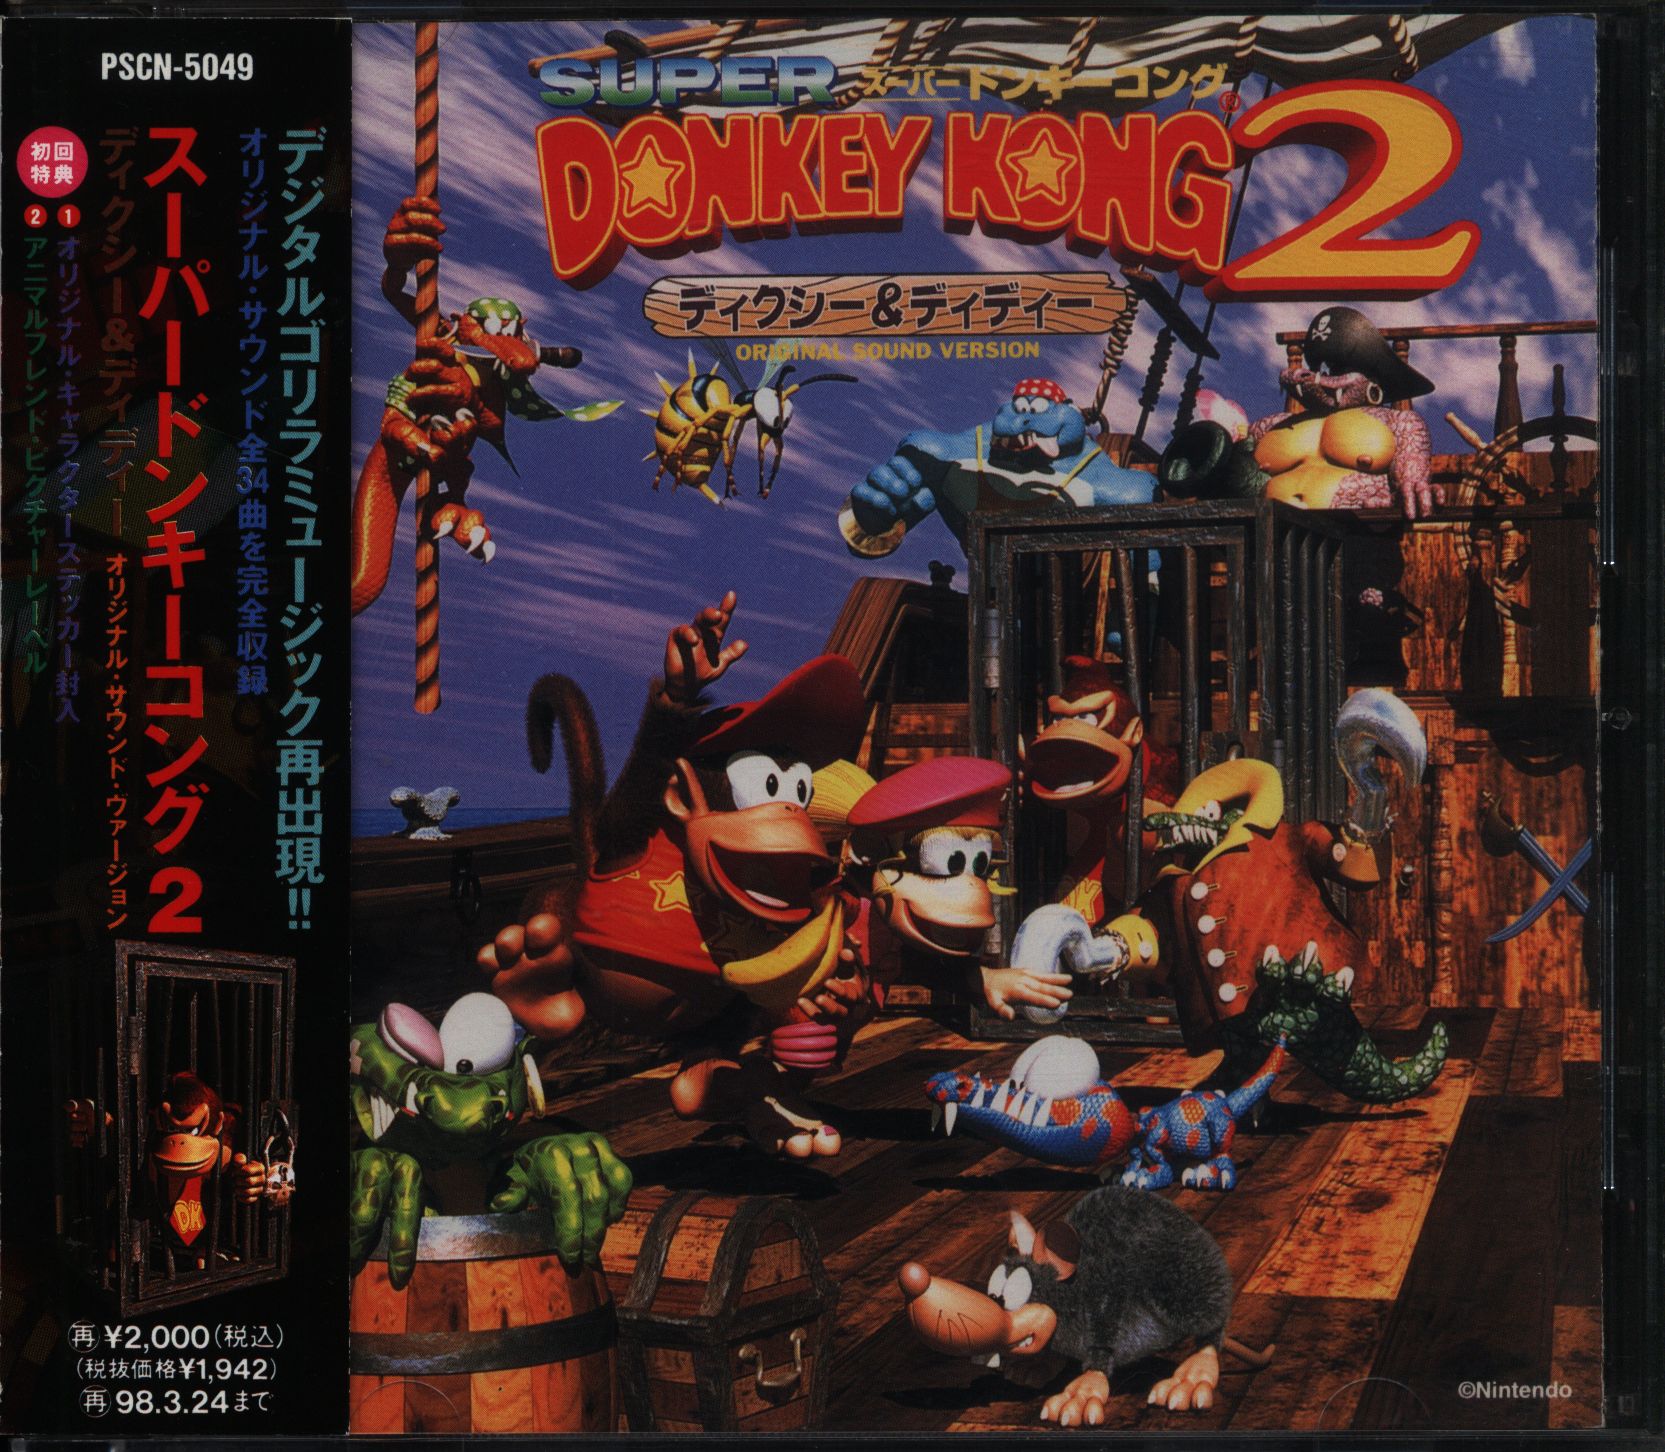 ゲームCD スーパードンキーコング2 オリジナルサウンドバージョン